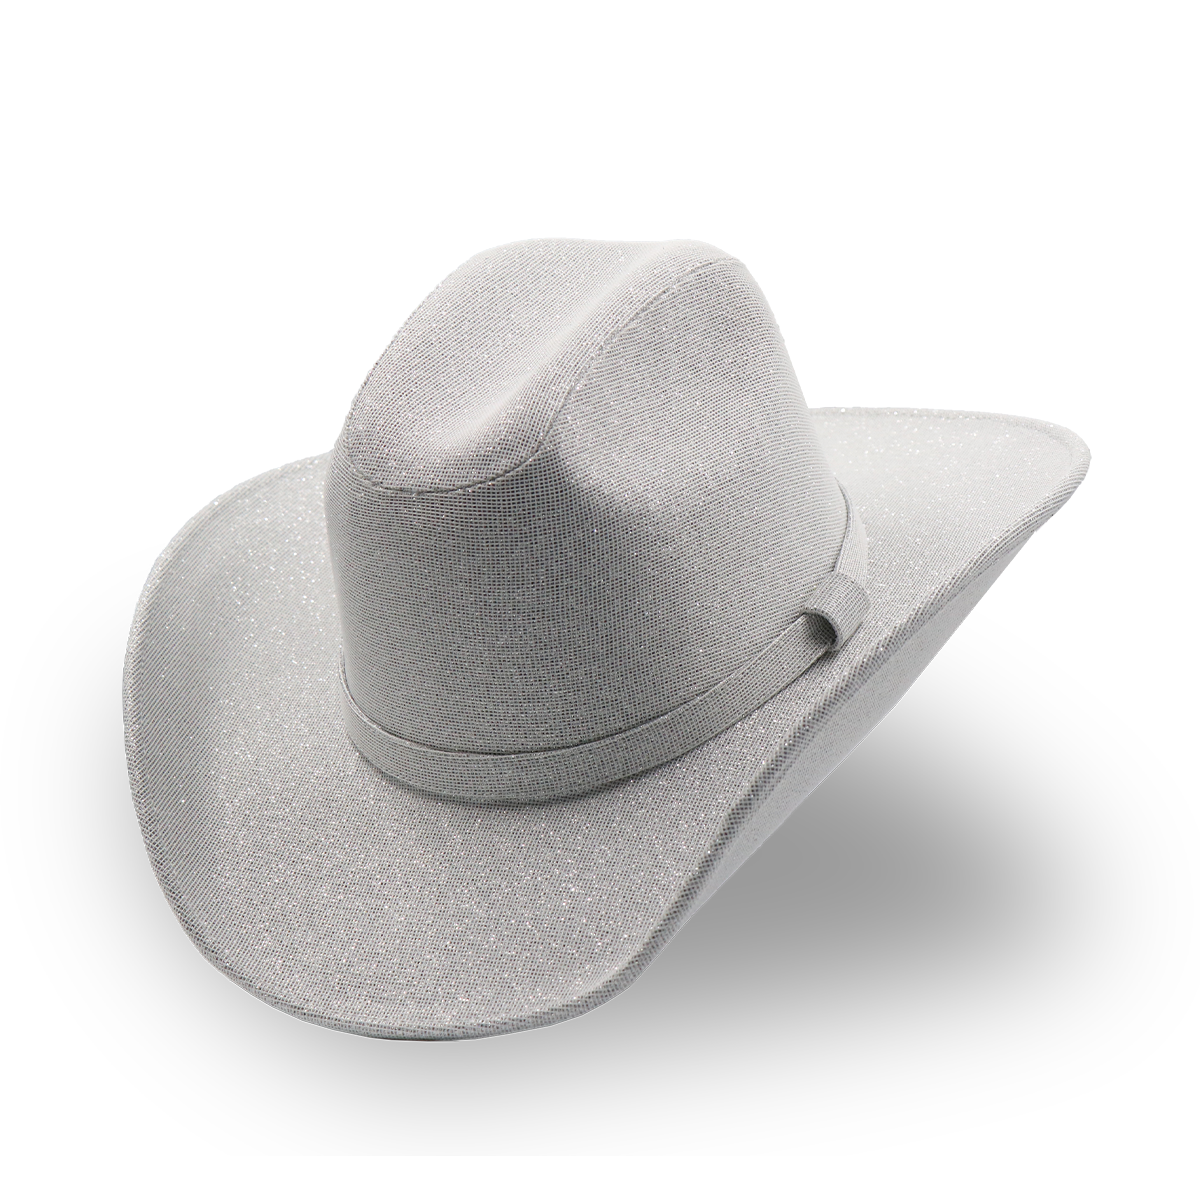 Sombrero Textil con Diseño Exclusivo Blanco - Formal -Cowboy